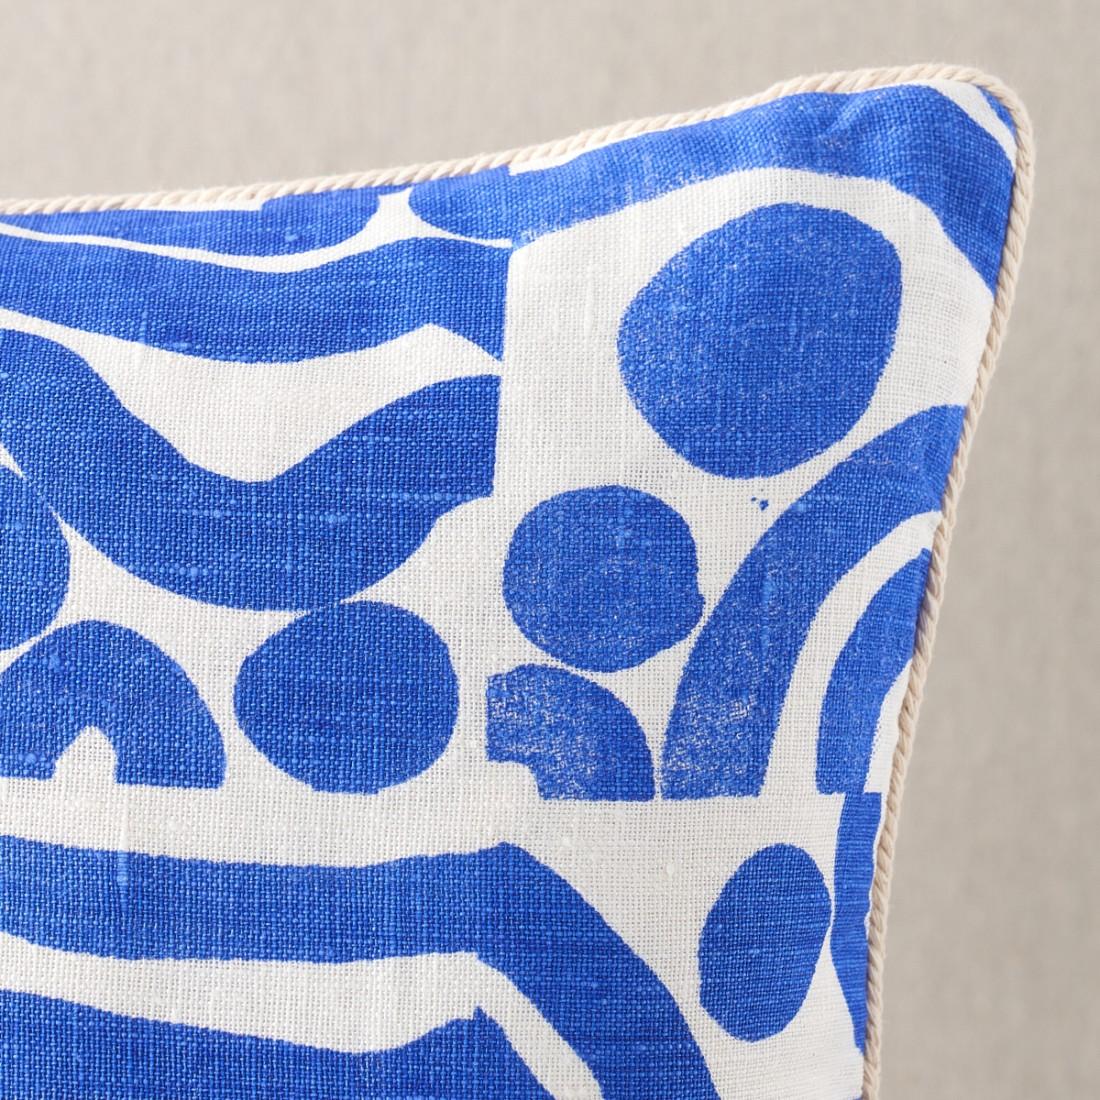 Das Ocean Blue Lendenkissen zeigt ein Original-Kunstwerk von Bonnie Ashley von Bonnie & Neal, gedruckt auf weißem Leinen. Die Rückseite des Kissens ist mit demselben Motiv auf Haferleinen bedruckt. Das Kissen ist mit einer weißen Kordel versehen und